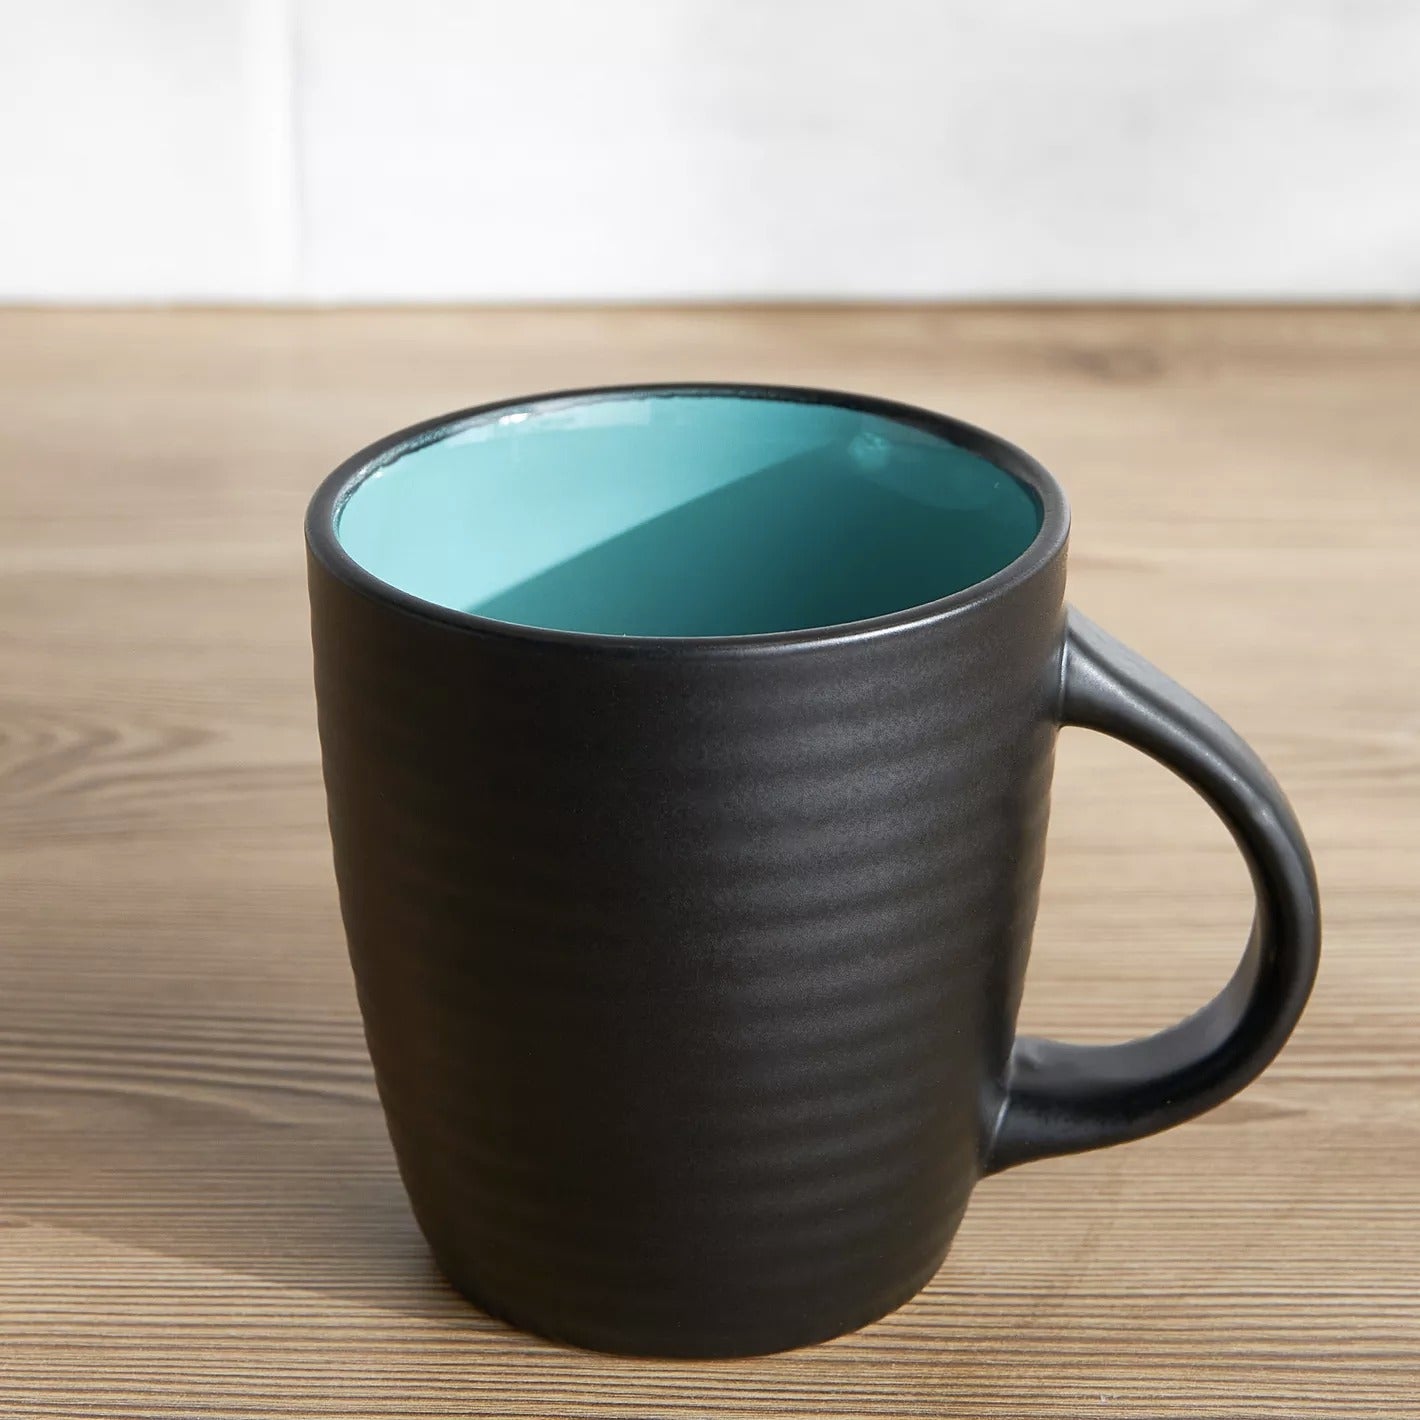 Multi Colour Ceramic Mugs - Set Of 6